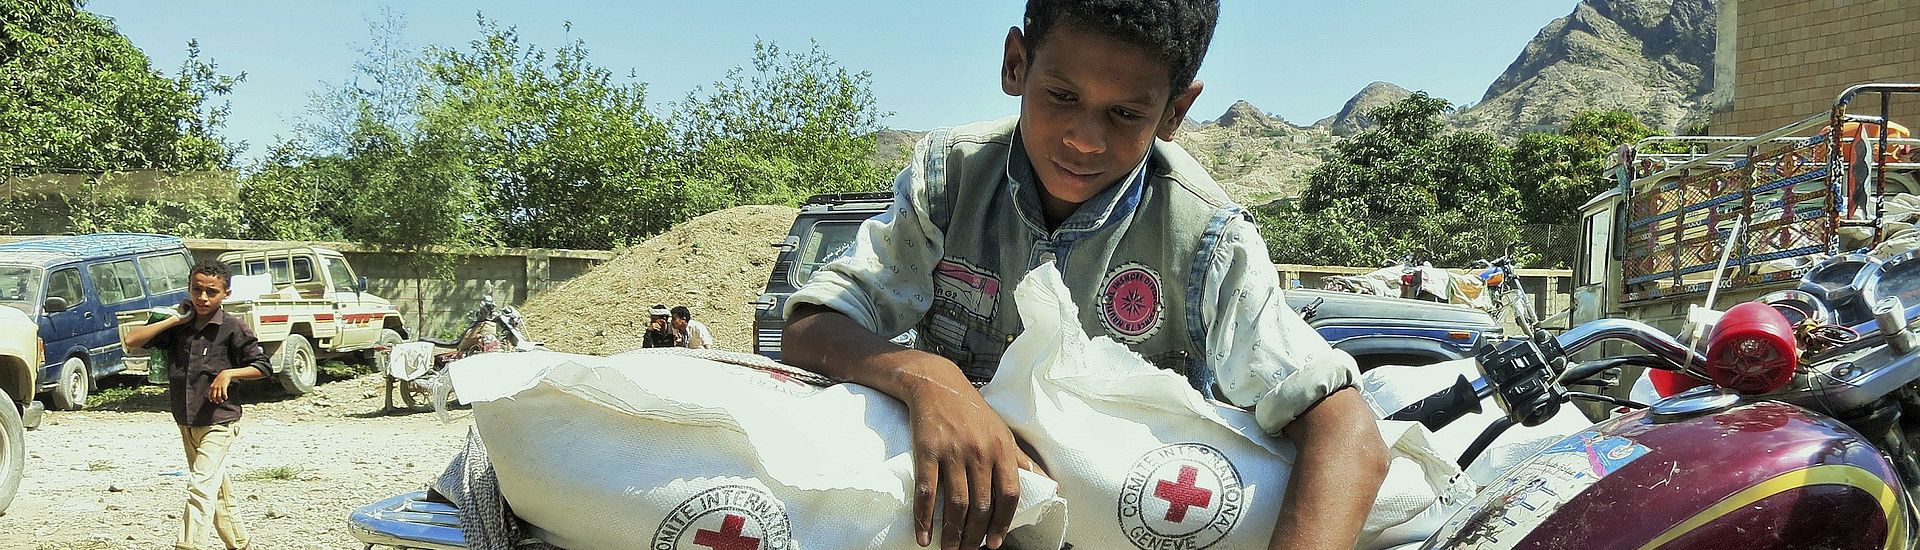 Humanitarian assistance in Yemen